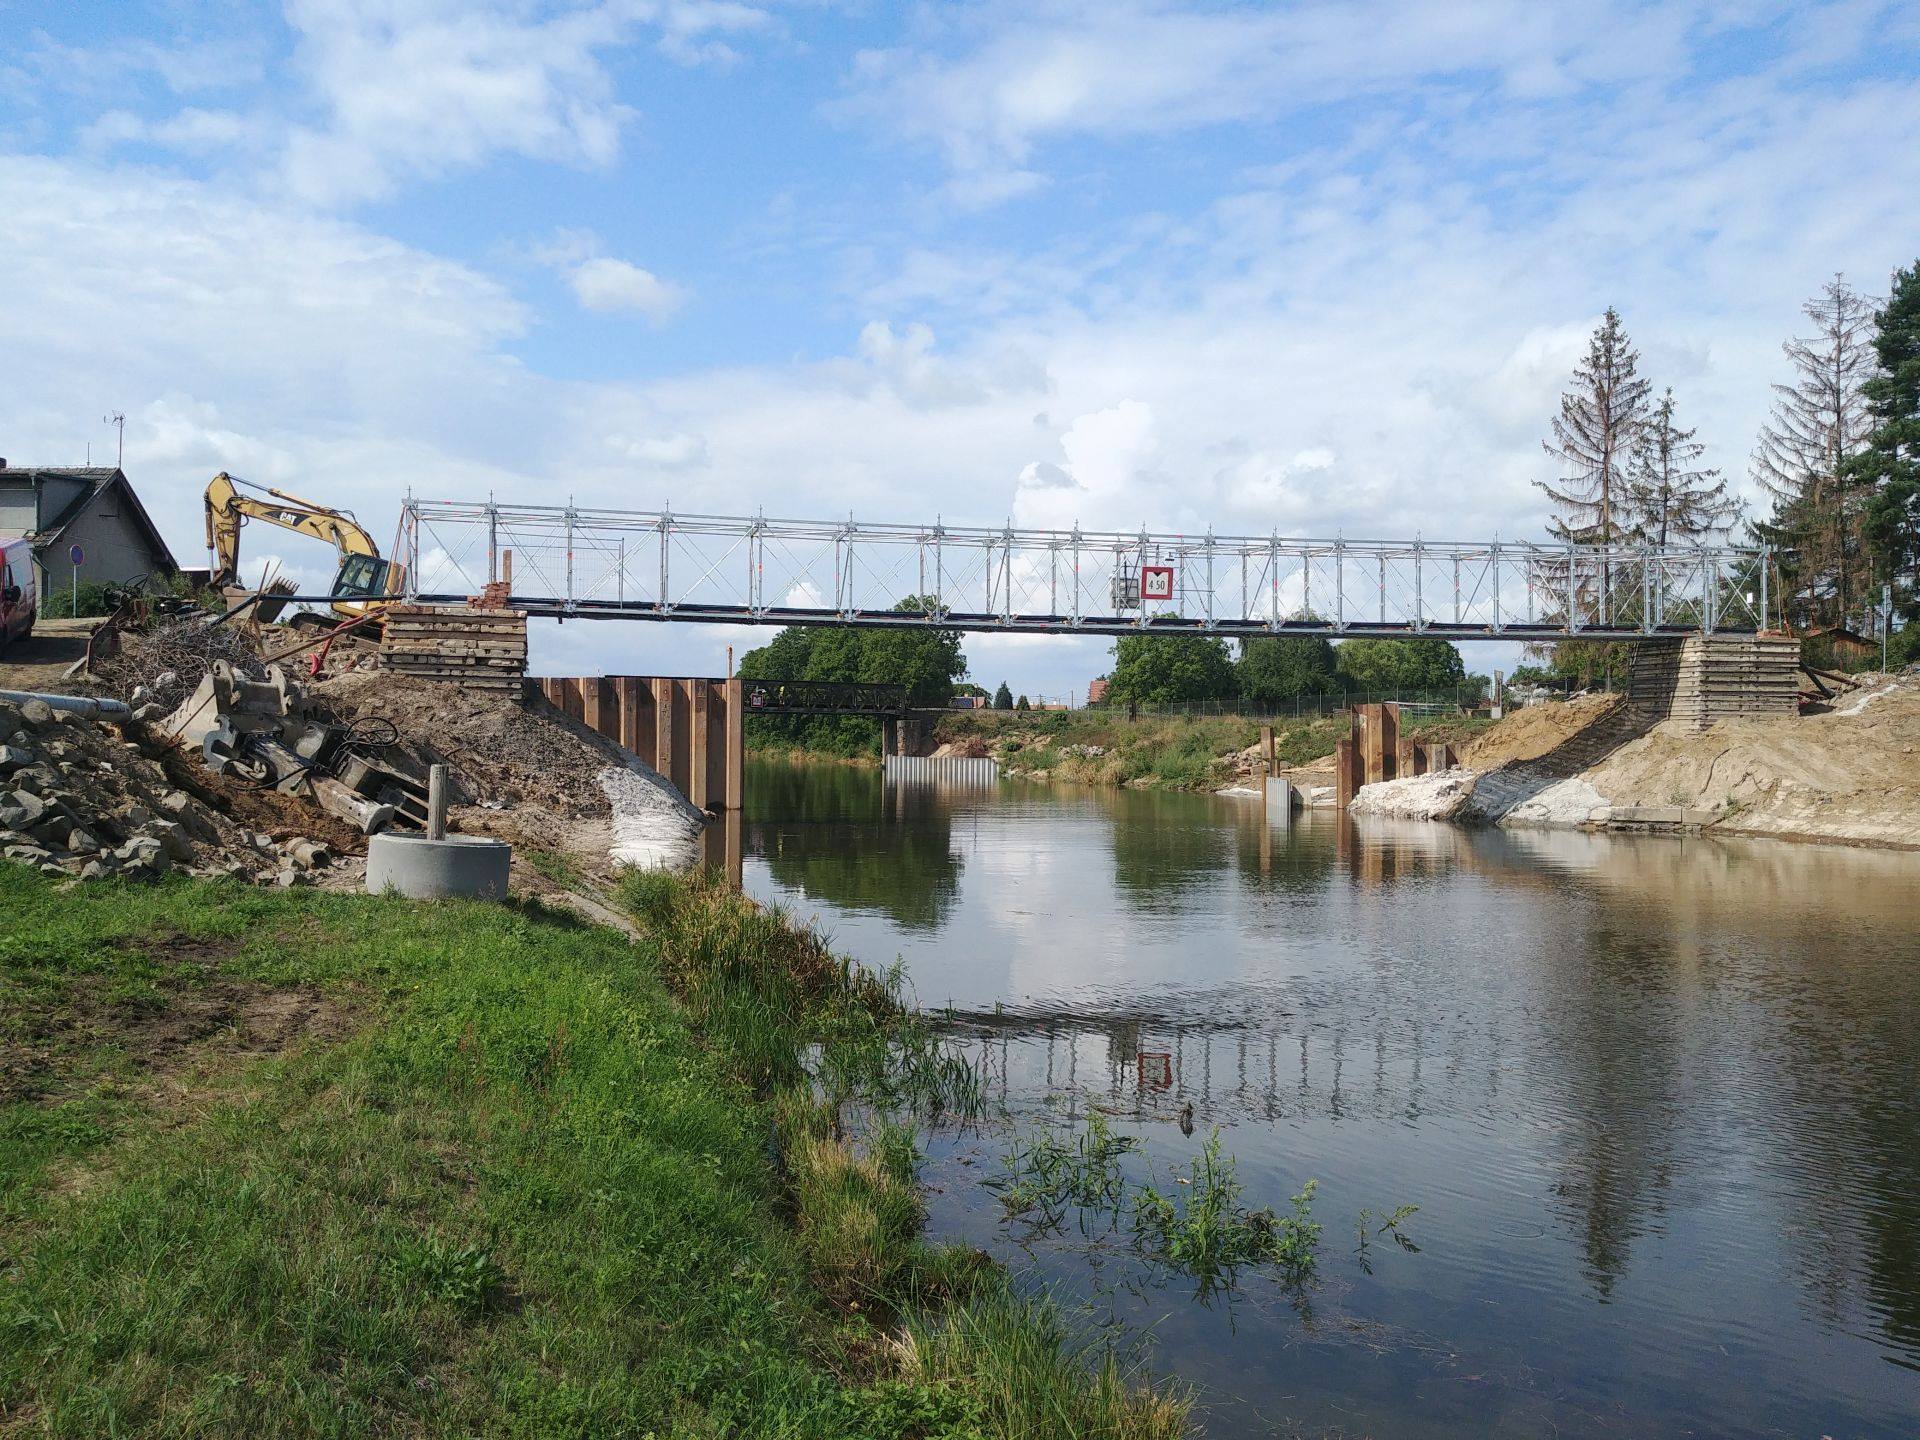 Výročí 22 let Ředitelství vodních cest ČR slaví intenzivní prací na stavbách